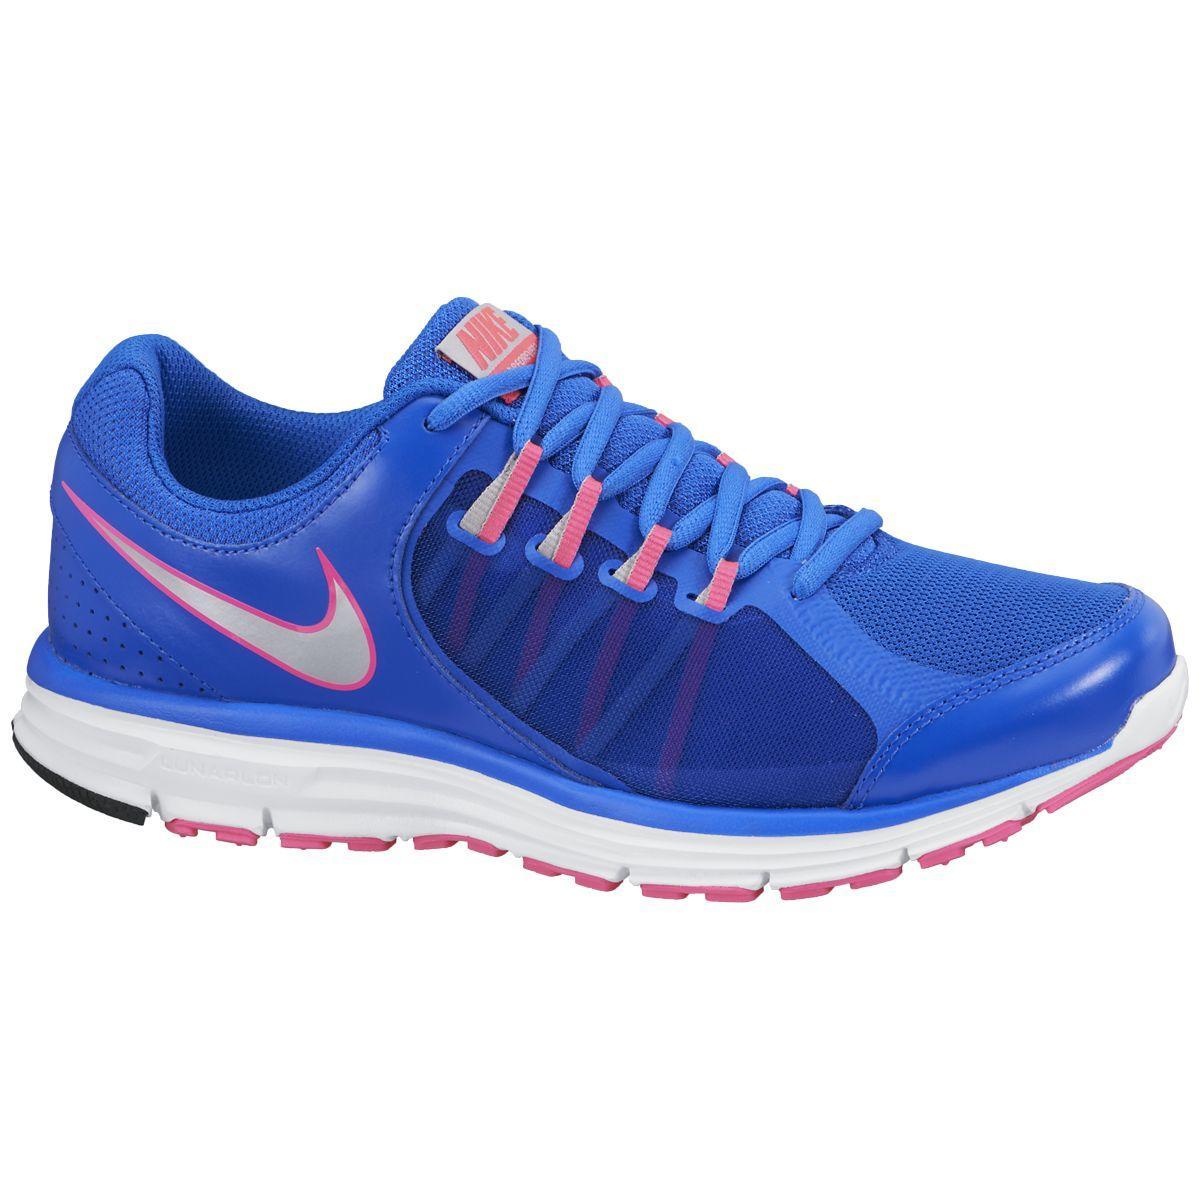 Nike Womens Lunar Forever Running Shoes - Hyper Cobalt/Pink - Tennisnuts.com